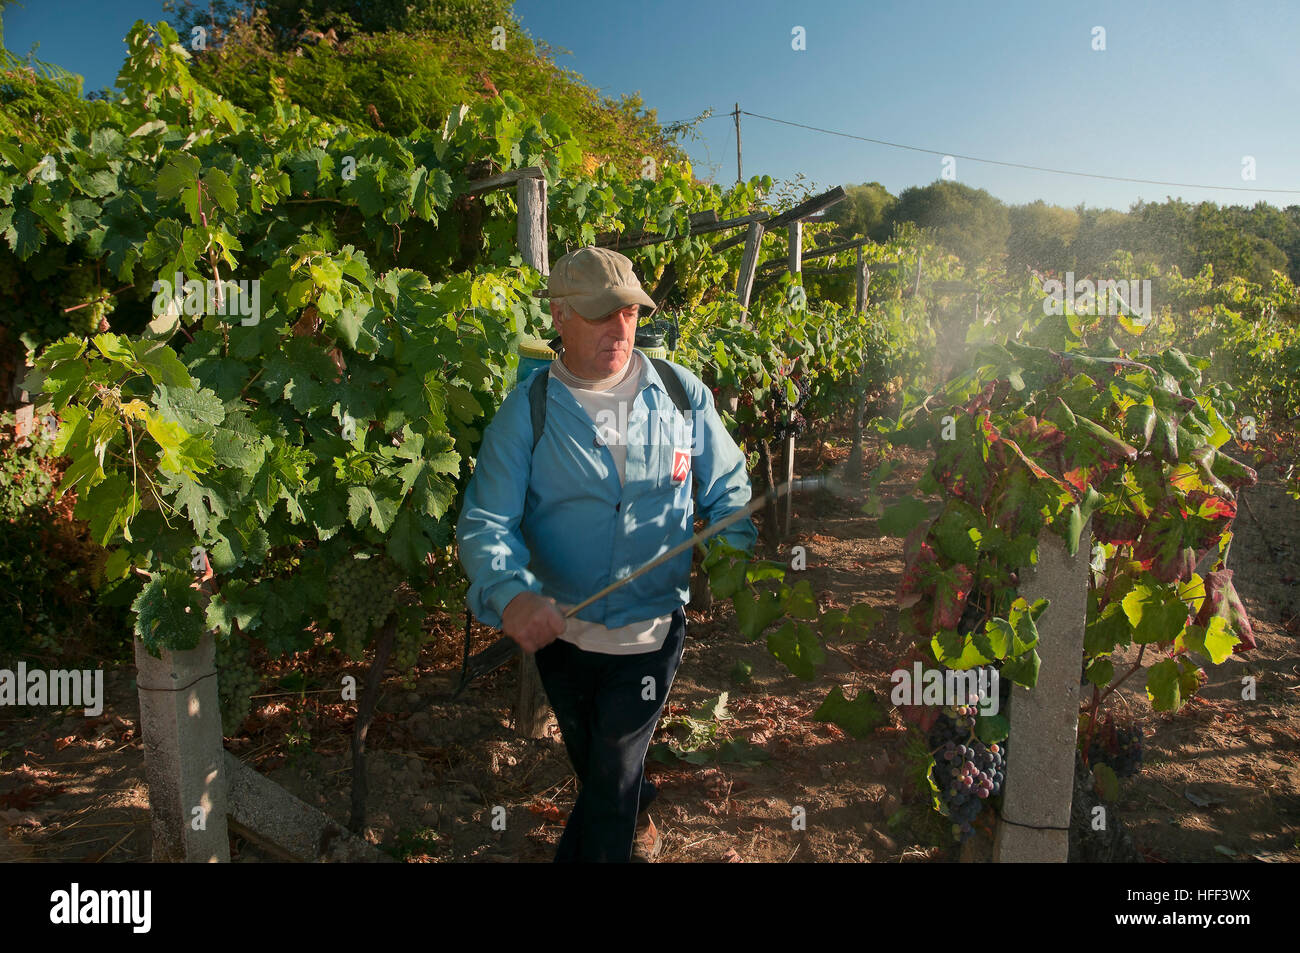 Ein Landwirt arbeiten in einem Weinberg, Celanova, Orense Provinz, Region Galicien, Spanien, Europa Stockfoto